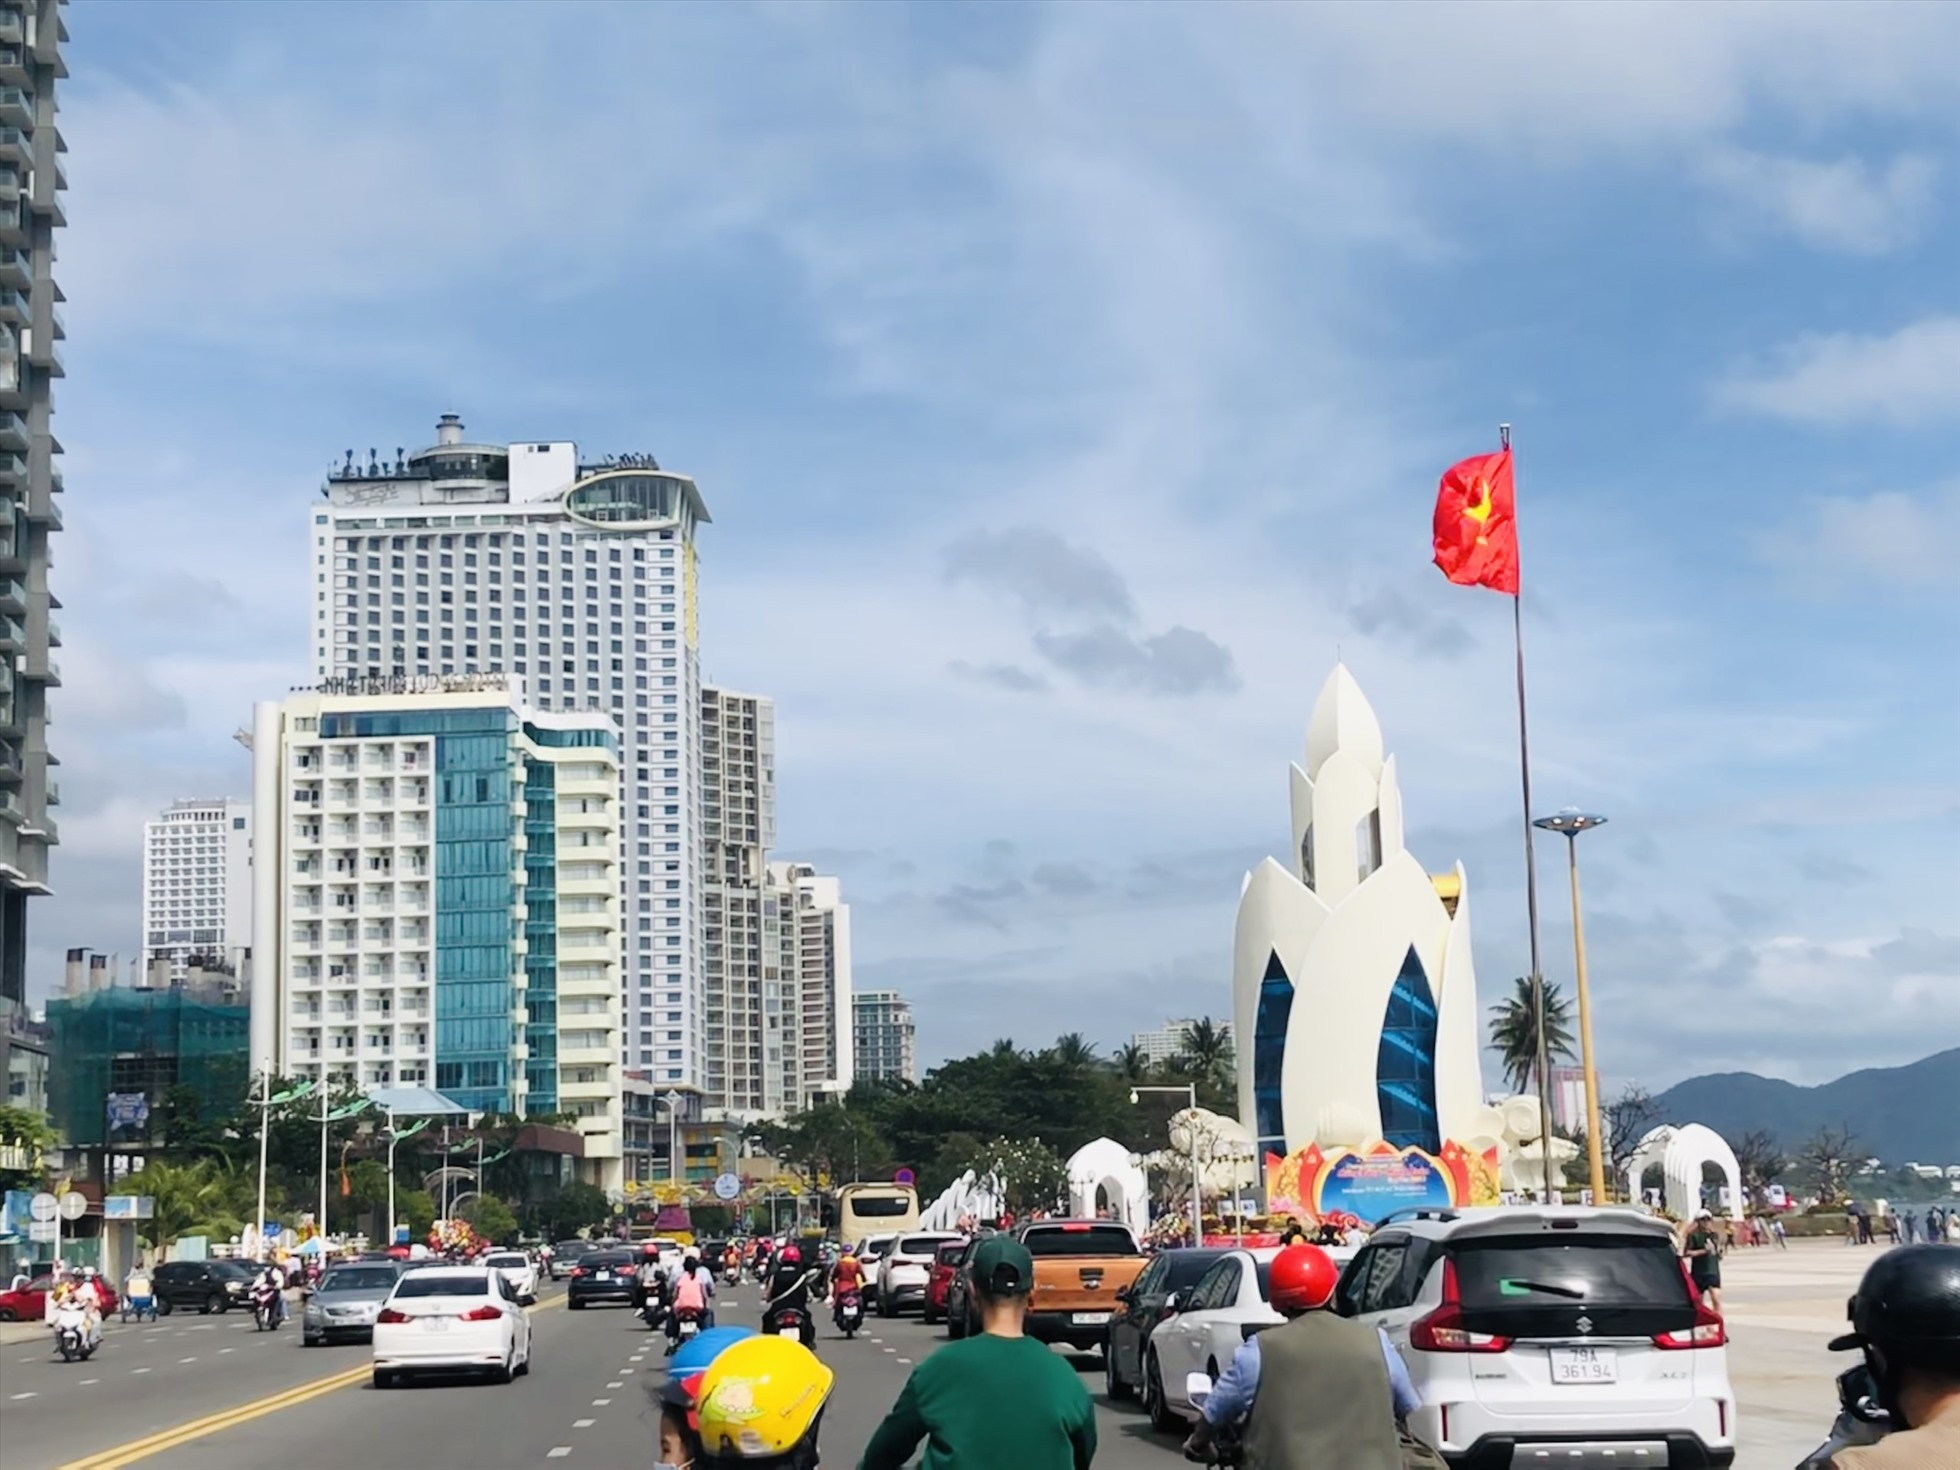 Ngay ngày mùng 1 Tết Nguyên đán dòng người đổ về đường Trần Phú (TP Nha Trang, Khánh Hòa) đoạn quan Quảng trường 2/4 và Tháp Trầm Hương đông hơn những năm trước.